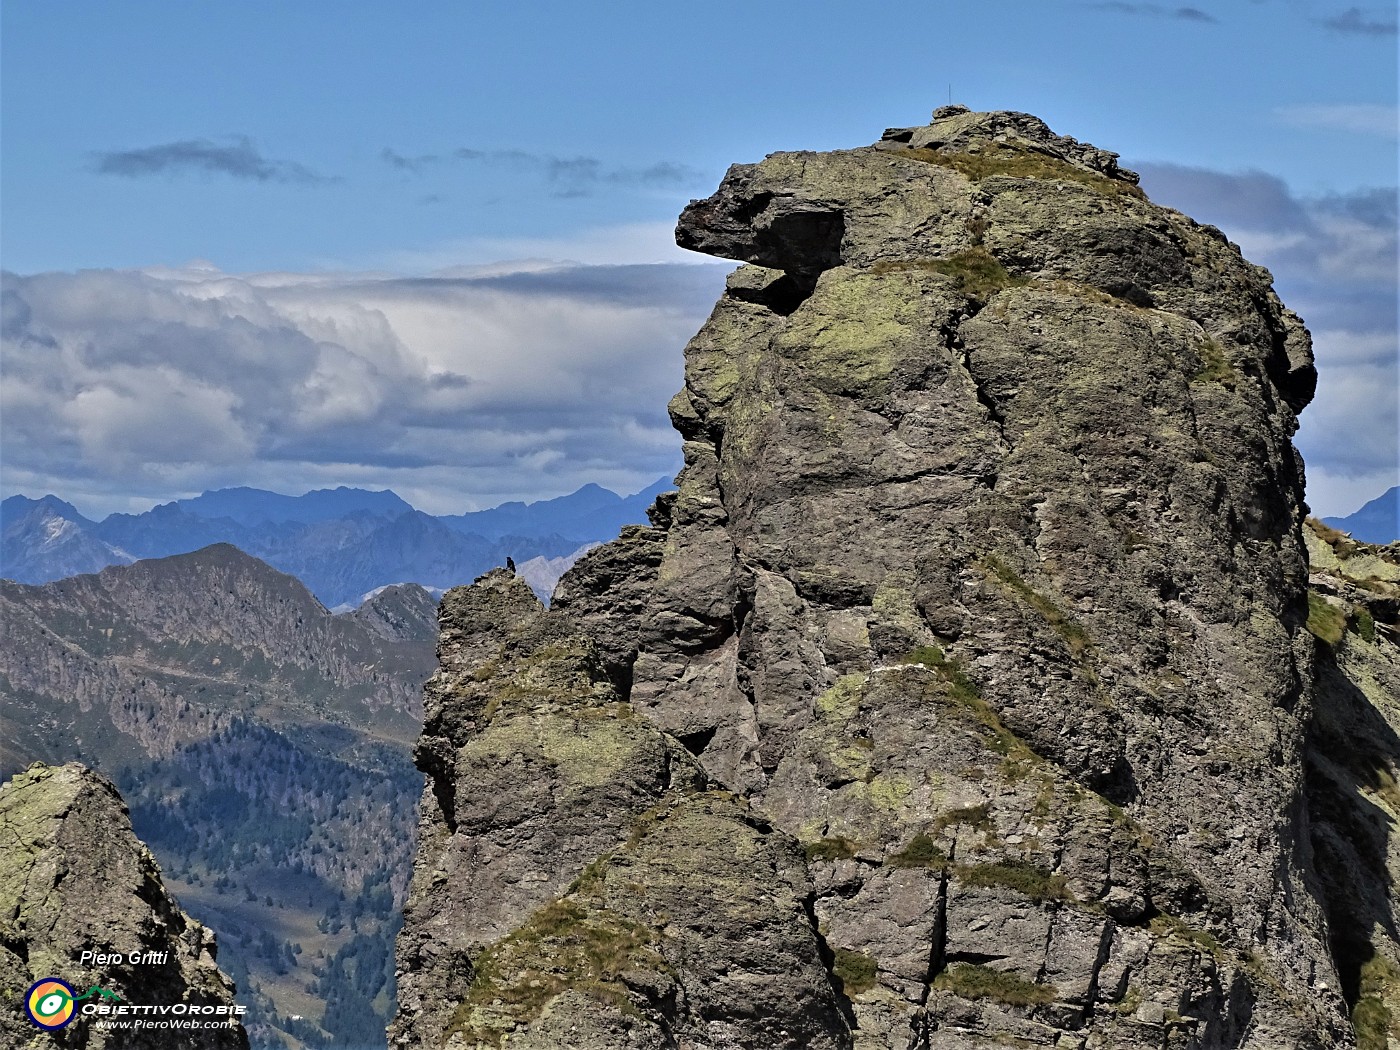 55 La rocciosa monolitica cima del Ponteranica occ. (2370 m) con corvo nero su roccione.JPG